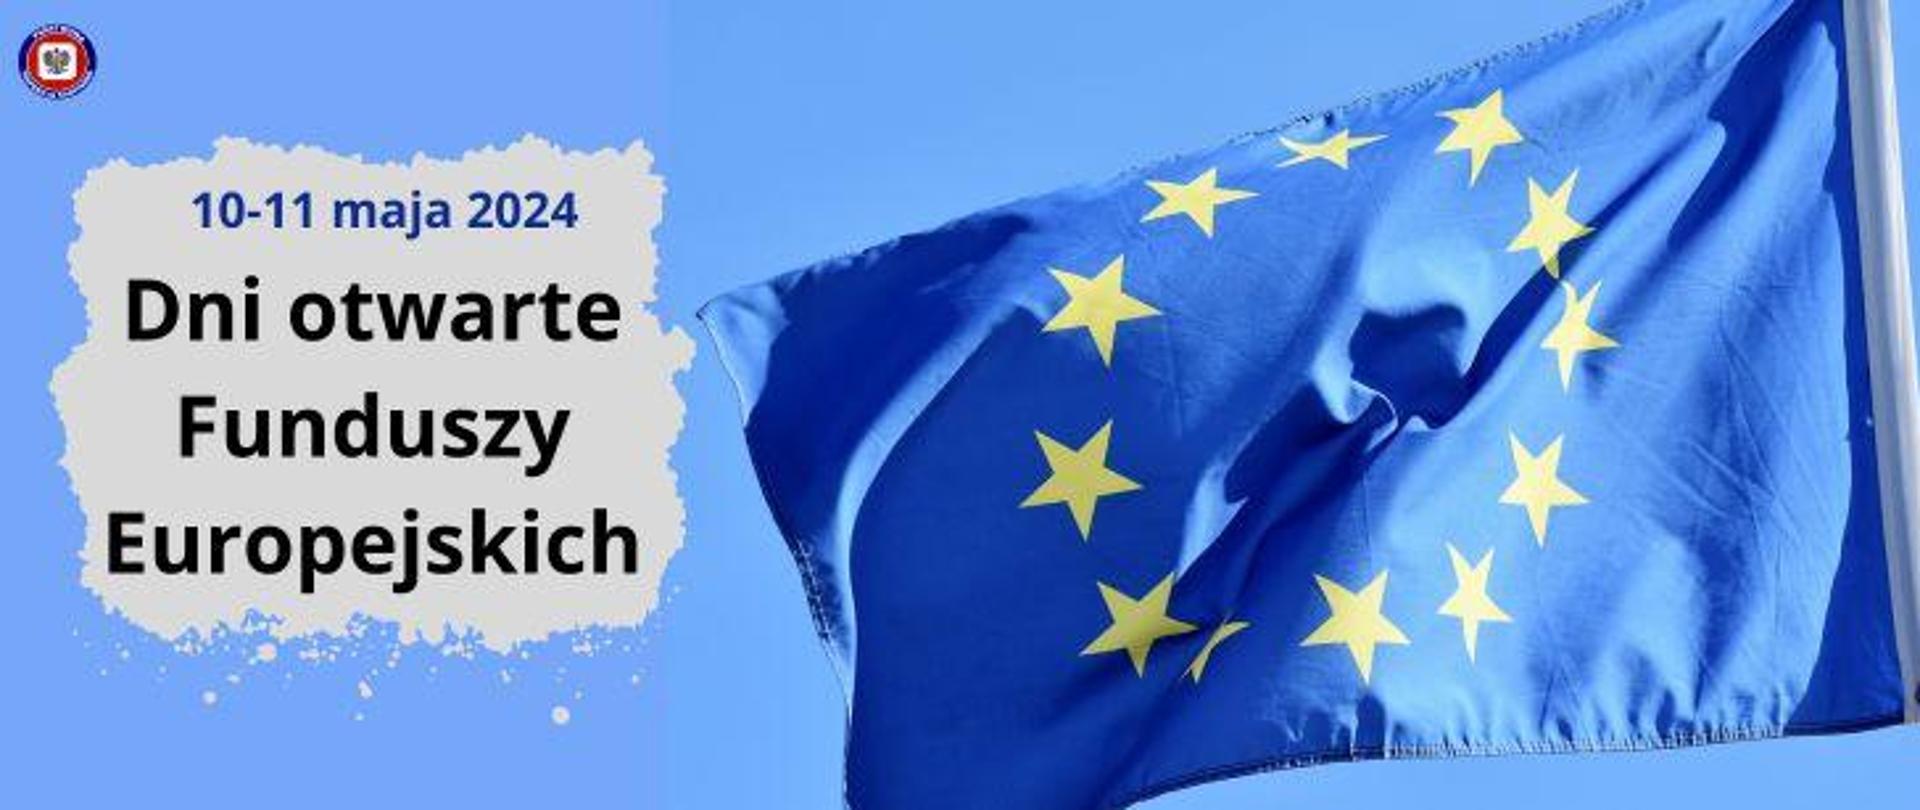 Po prawej na tle niebieskiego nieba powiewa flaga Unii Europejskiej. Po lewej na szarym tle ciemny napis 10-11 maja 2024, a poniżej Dni otwarte Funduszy Europejskich. W lewym górnym rogu logo Państwowej inspekcji Sanitarnej.